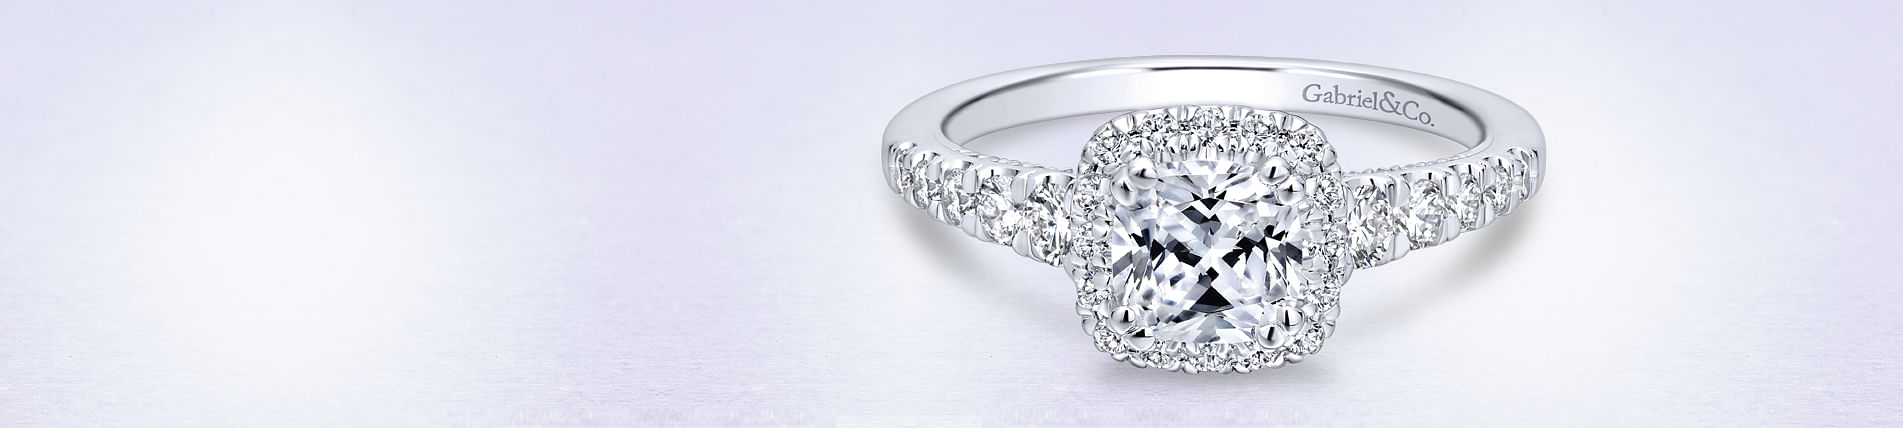 14K White Gold Cushion Halo Diamond Engagement Ring angle 